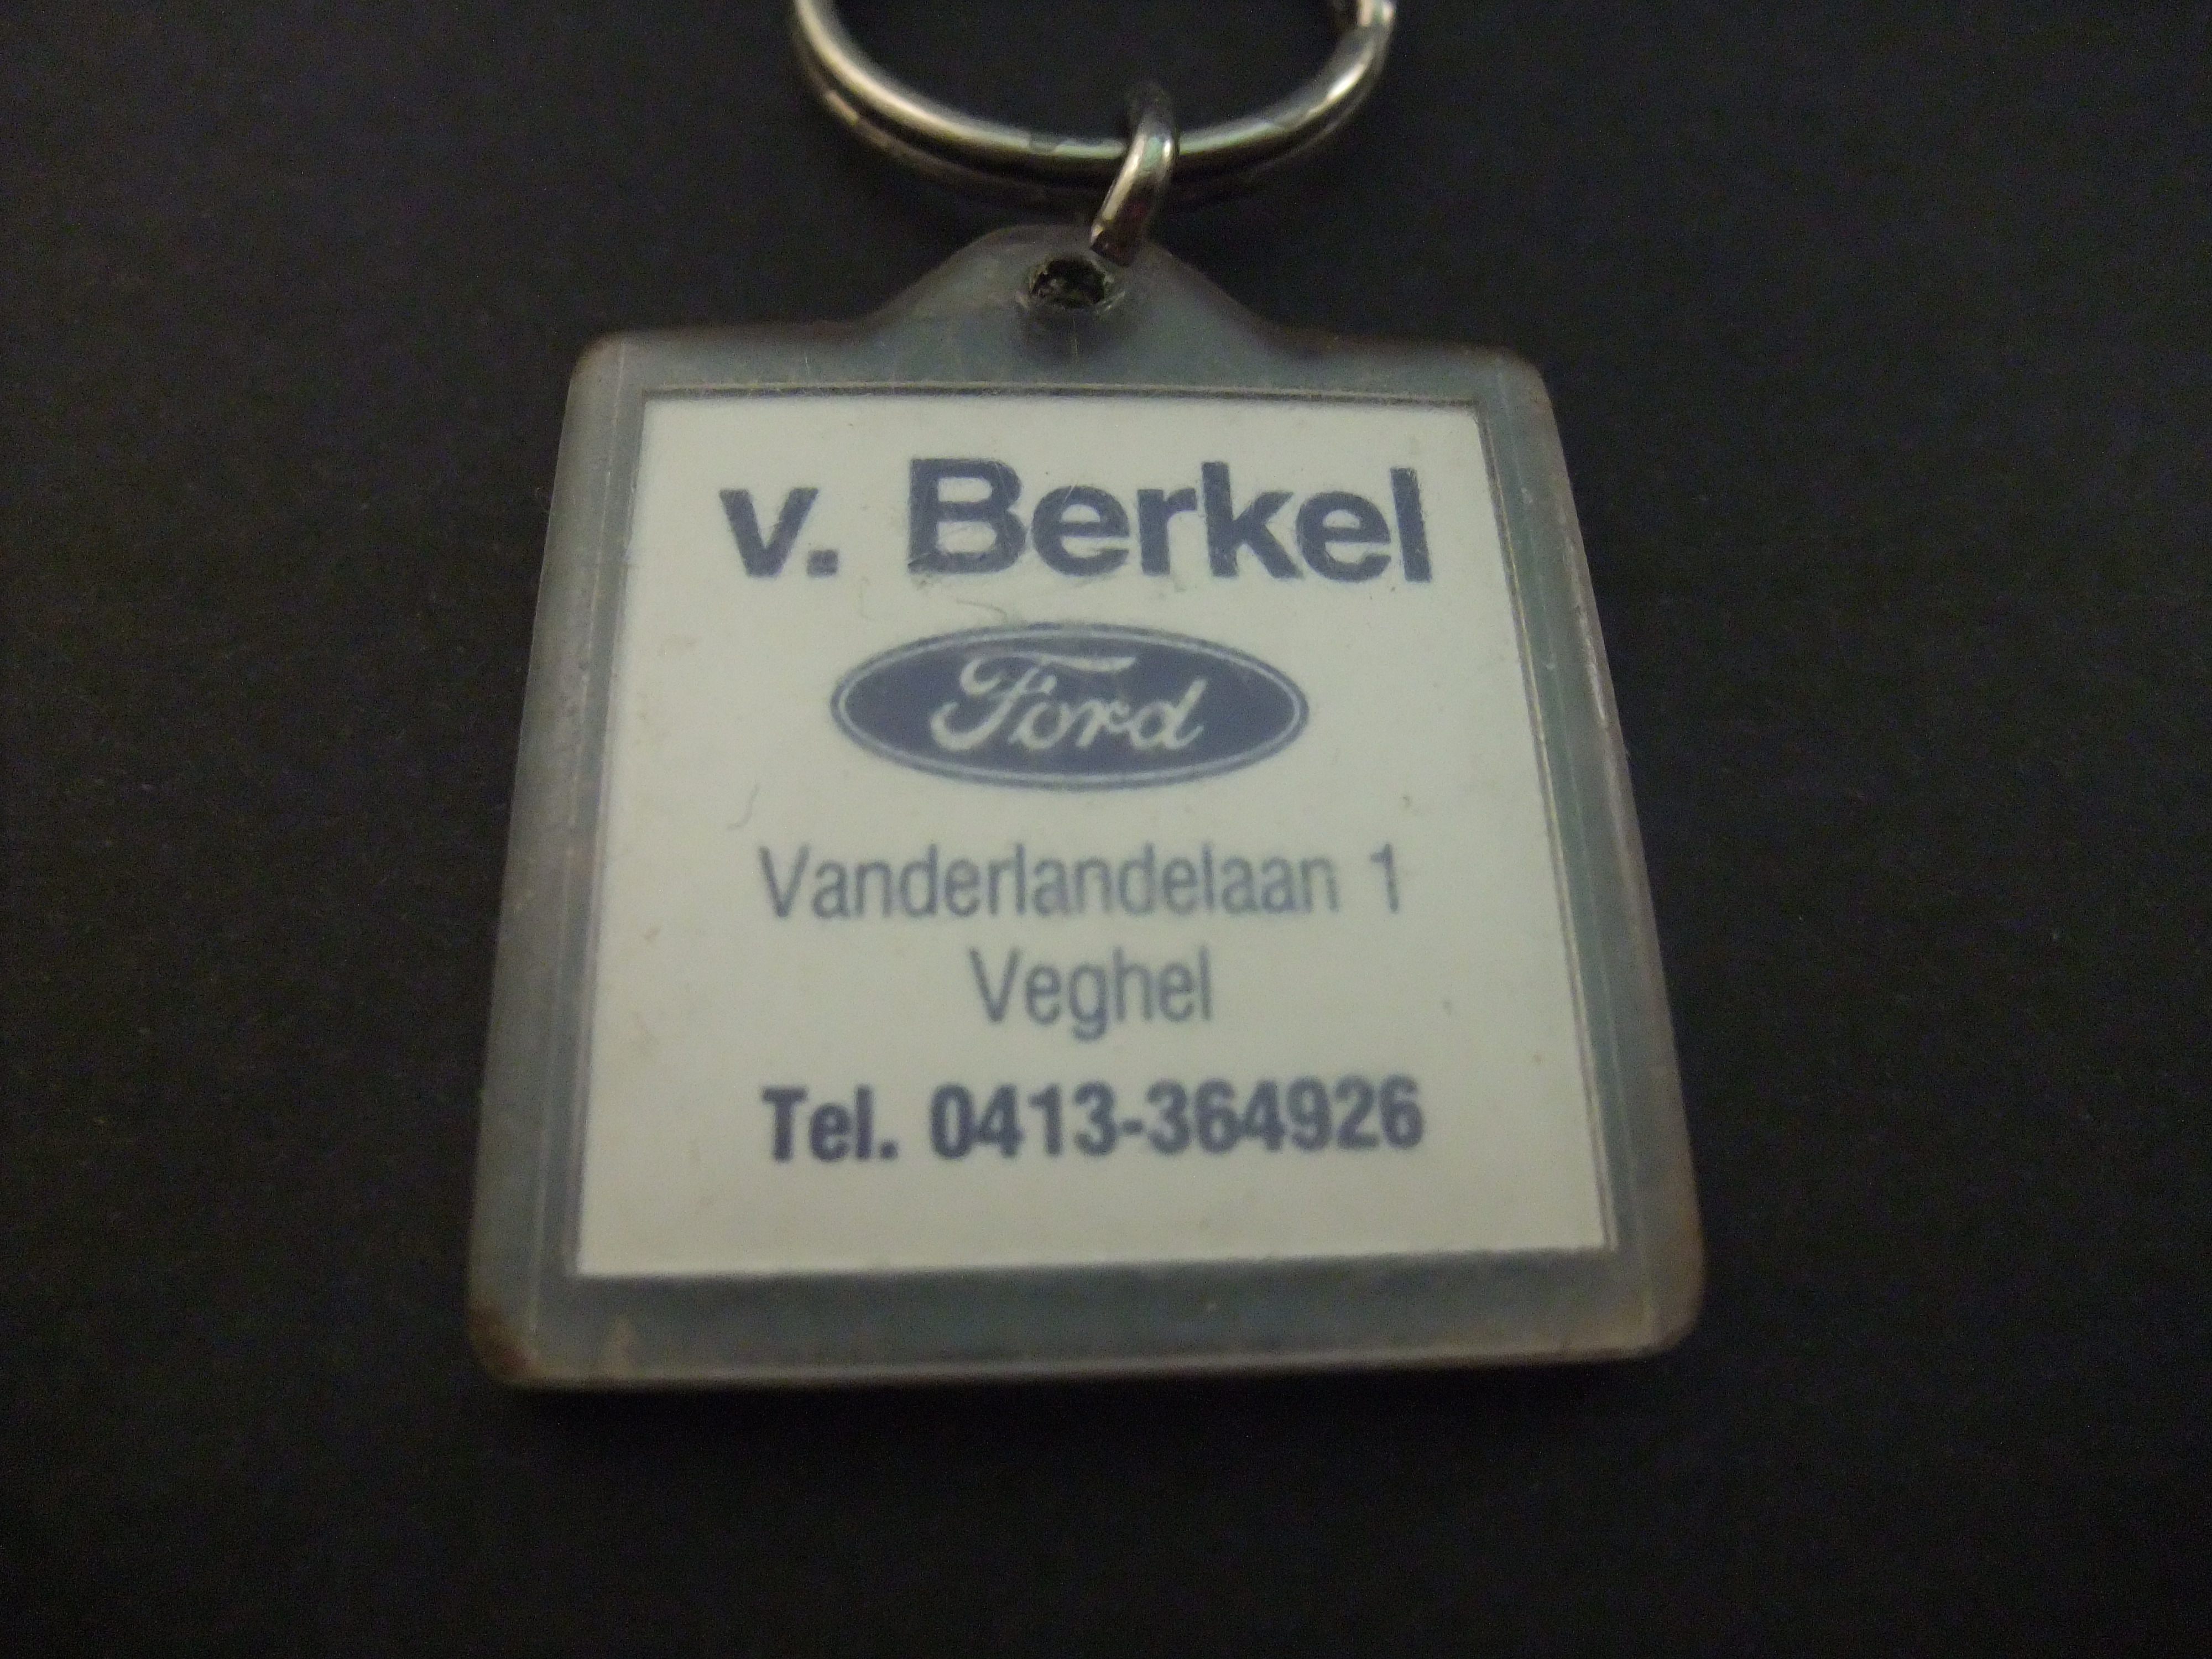 V. Berkel Ford dealer Vanderlandelaan Veghel sleutelhanger (2)